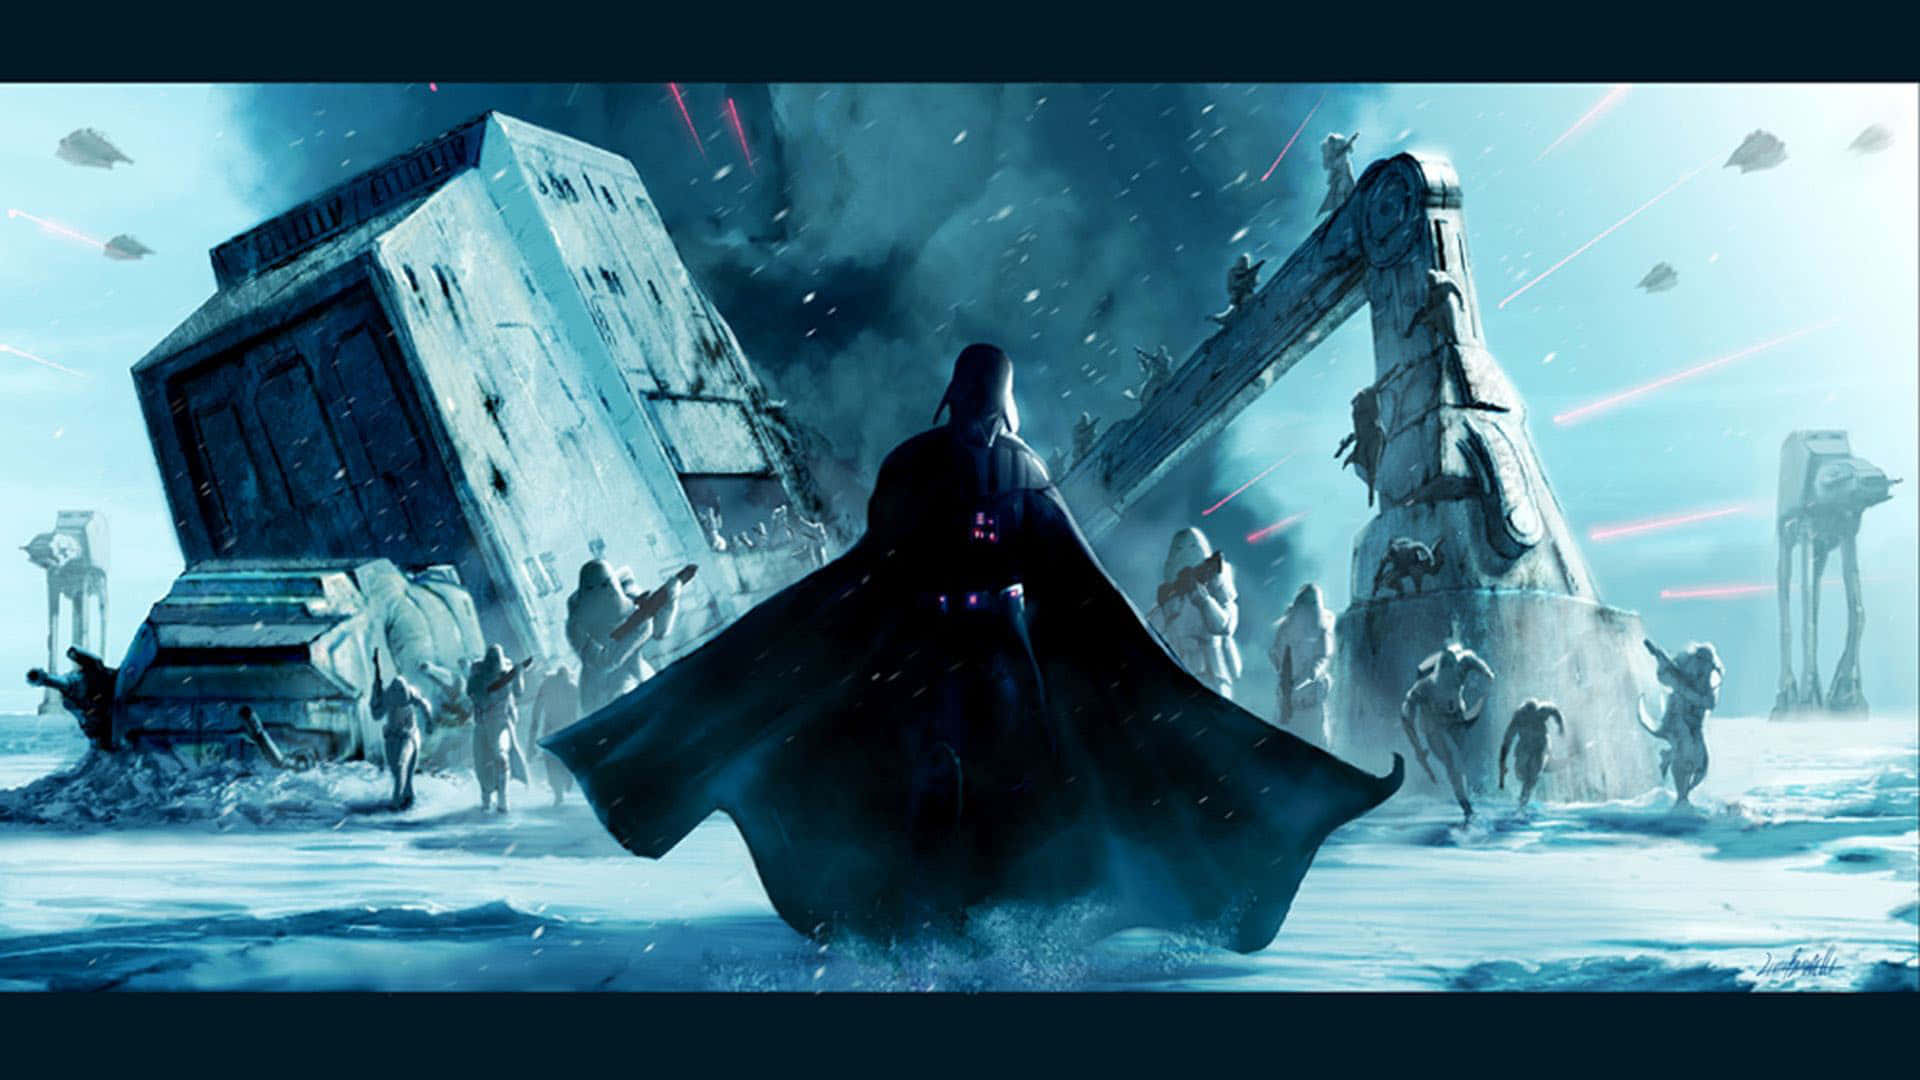 Bildkejsar Palpatine Och Darth Vader Härskar Över Star Wars-imperiet Wallpaper